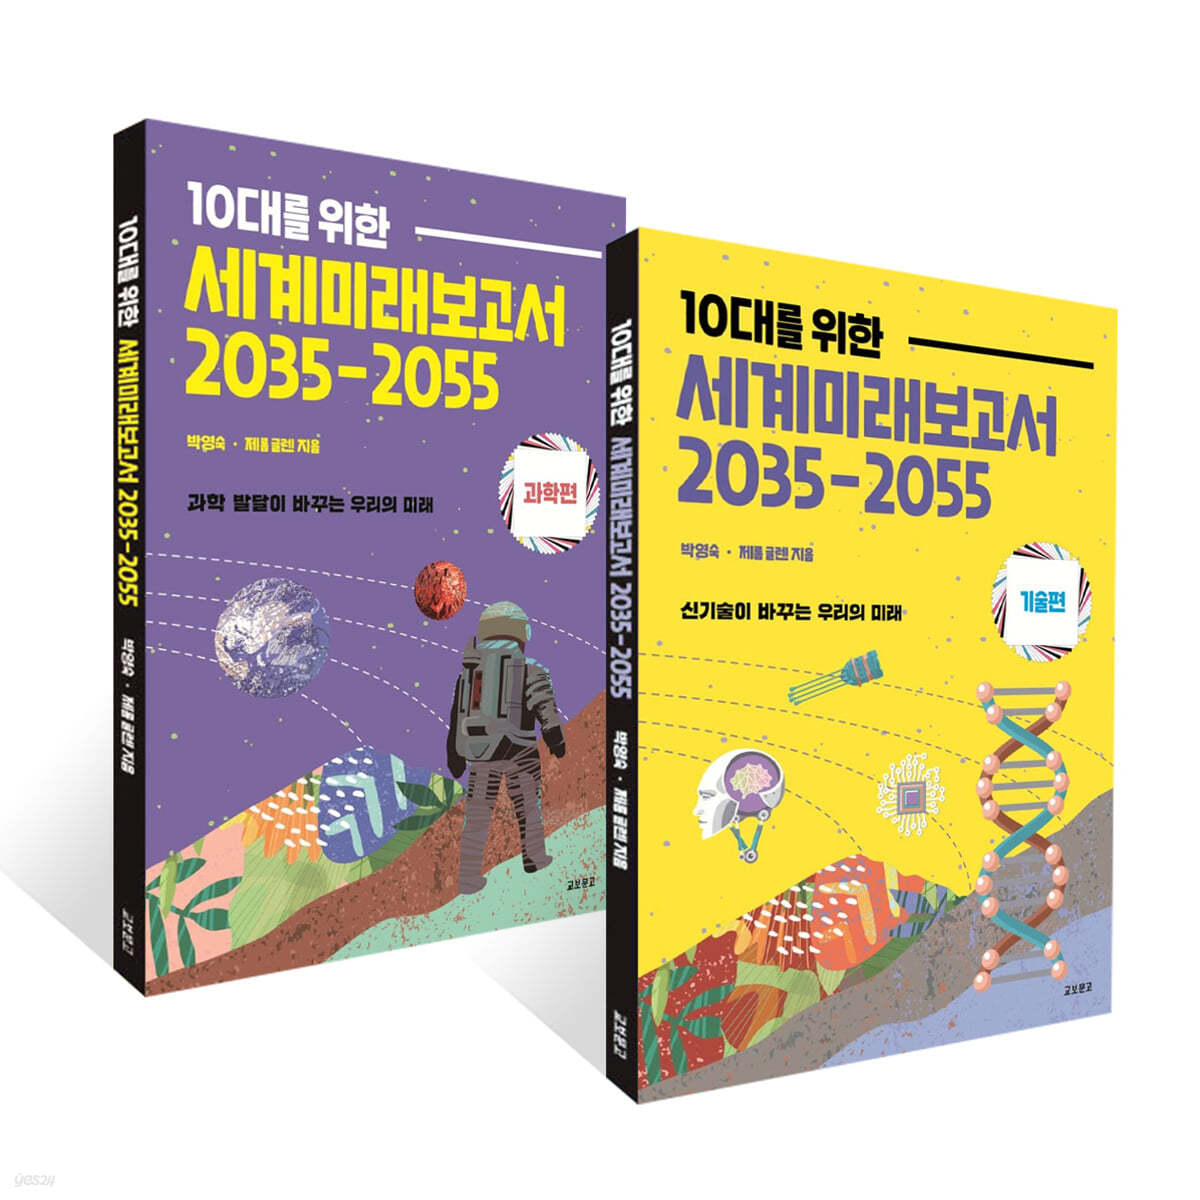 10대를 위한 세계 미래 보고서 2035-2055 2권 세트